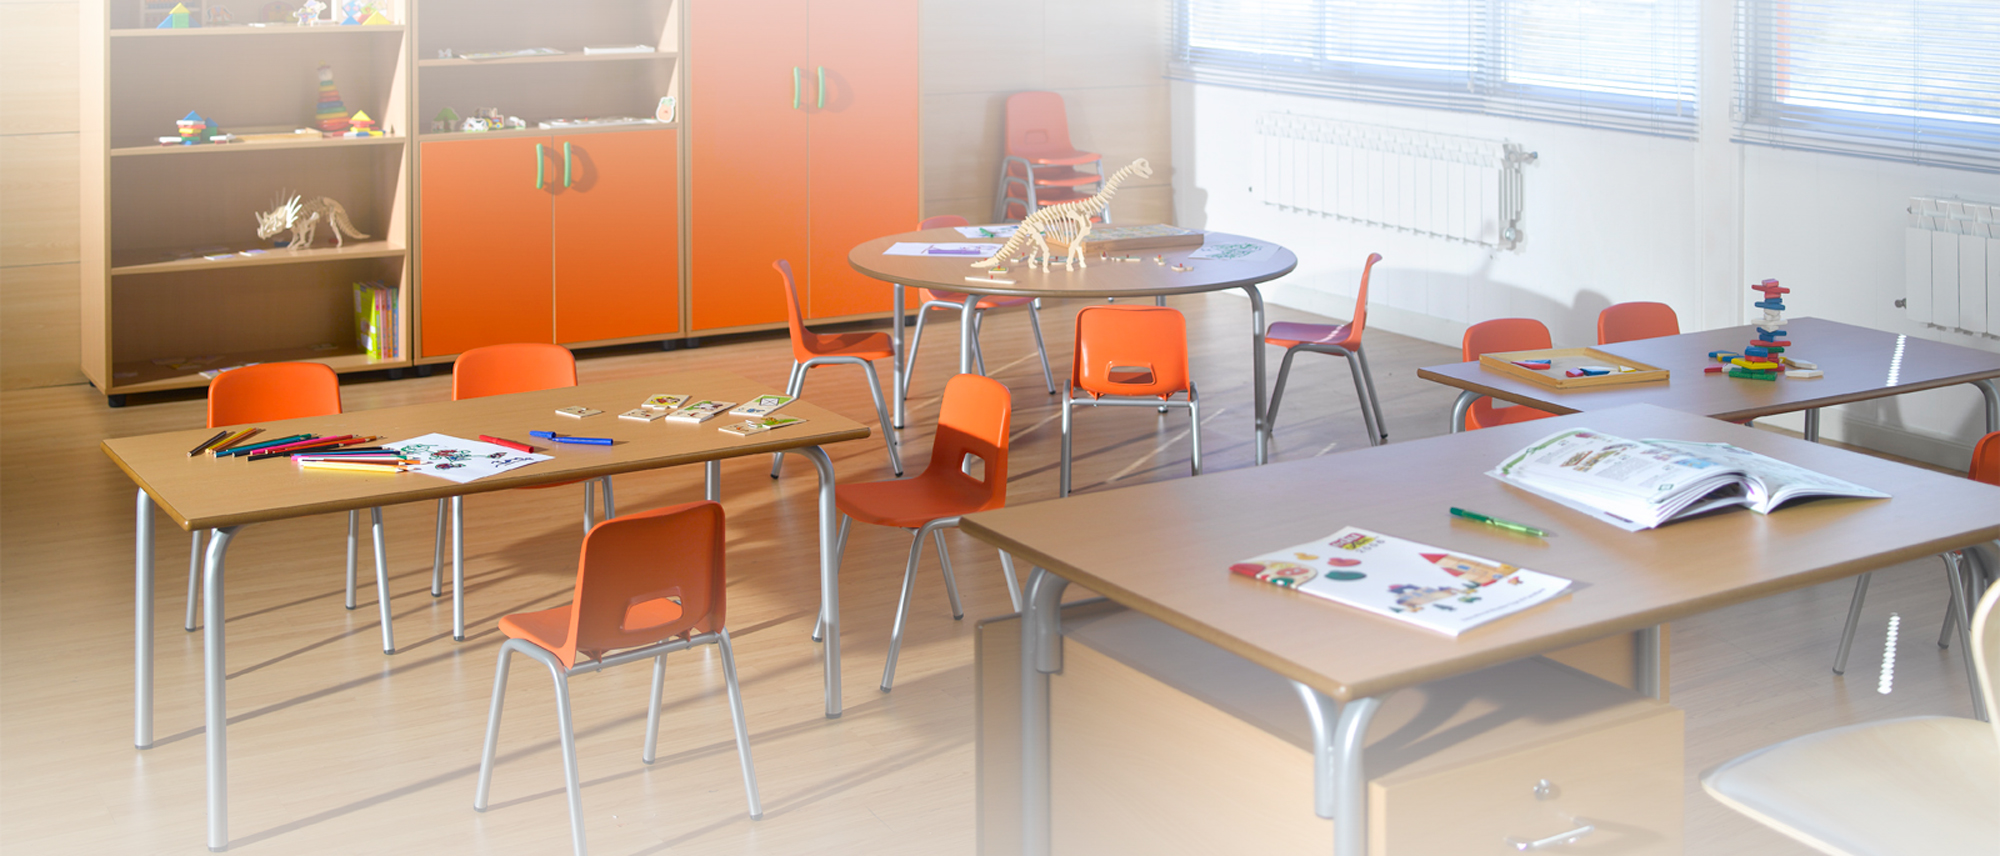 Mesas, armarios y sillas para aulmnos y profesores en centro educativo de formación